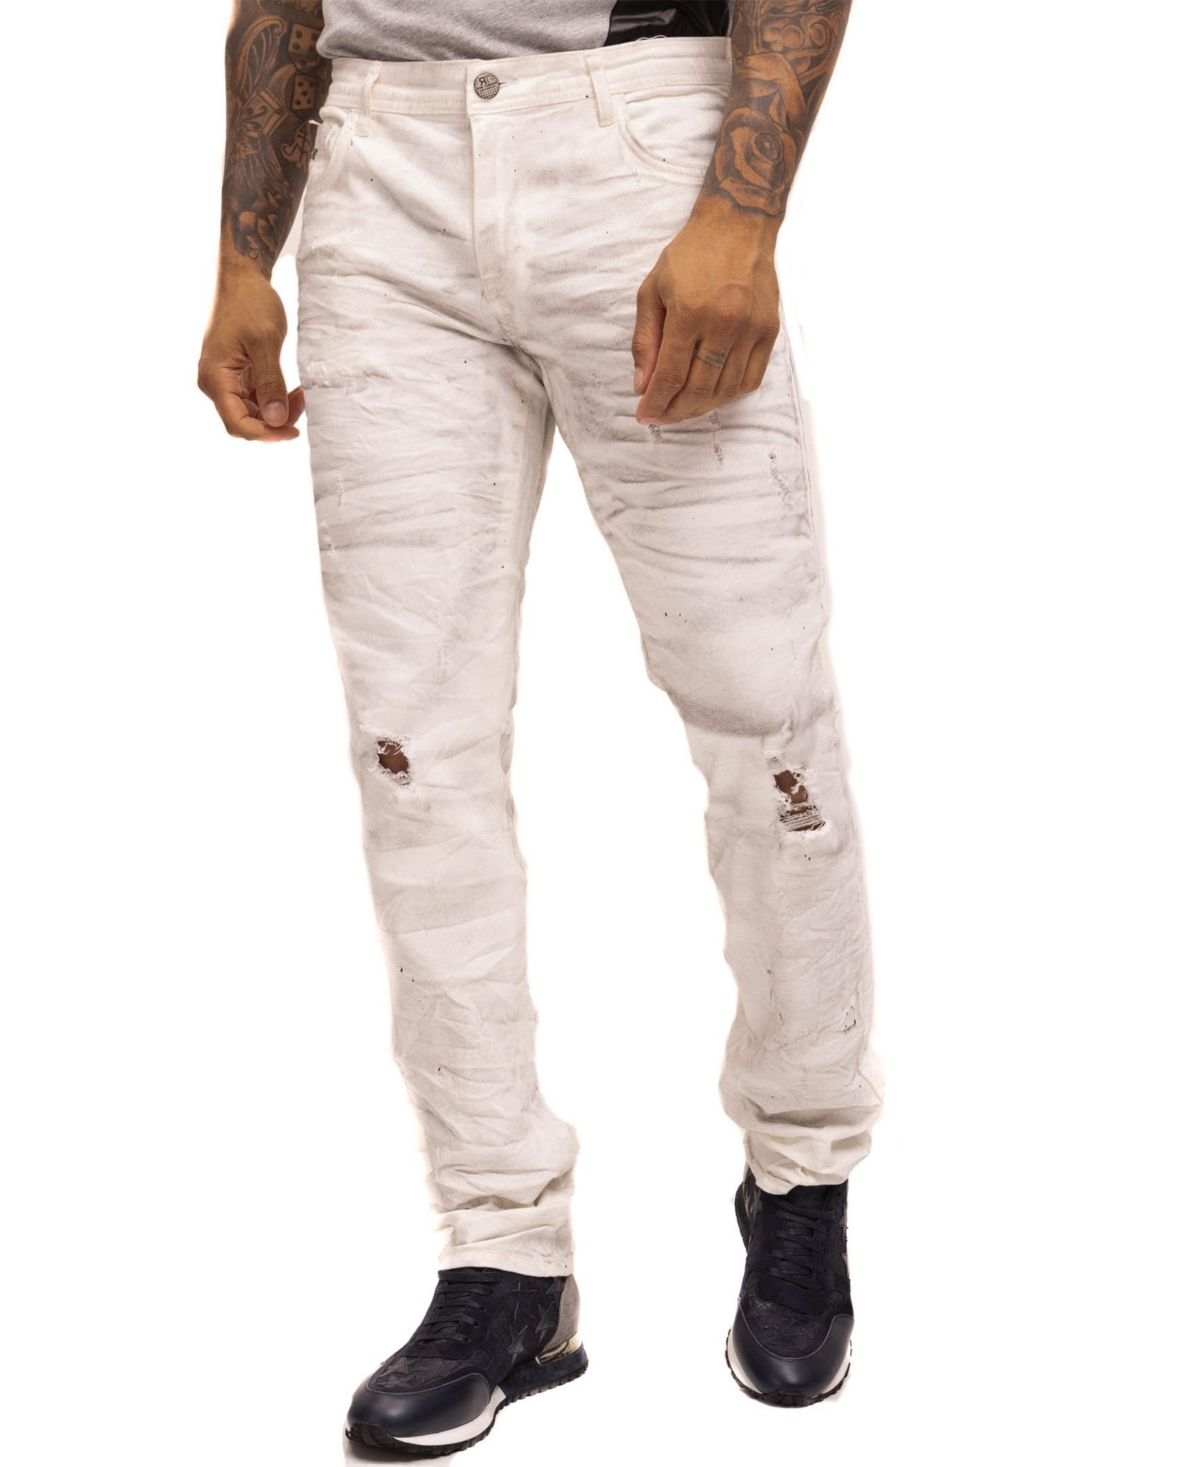 Men's Modern Splat Denim Jeans - White